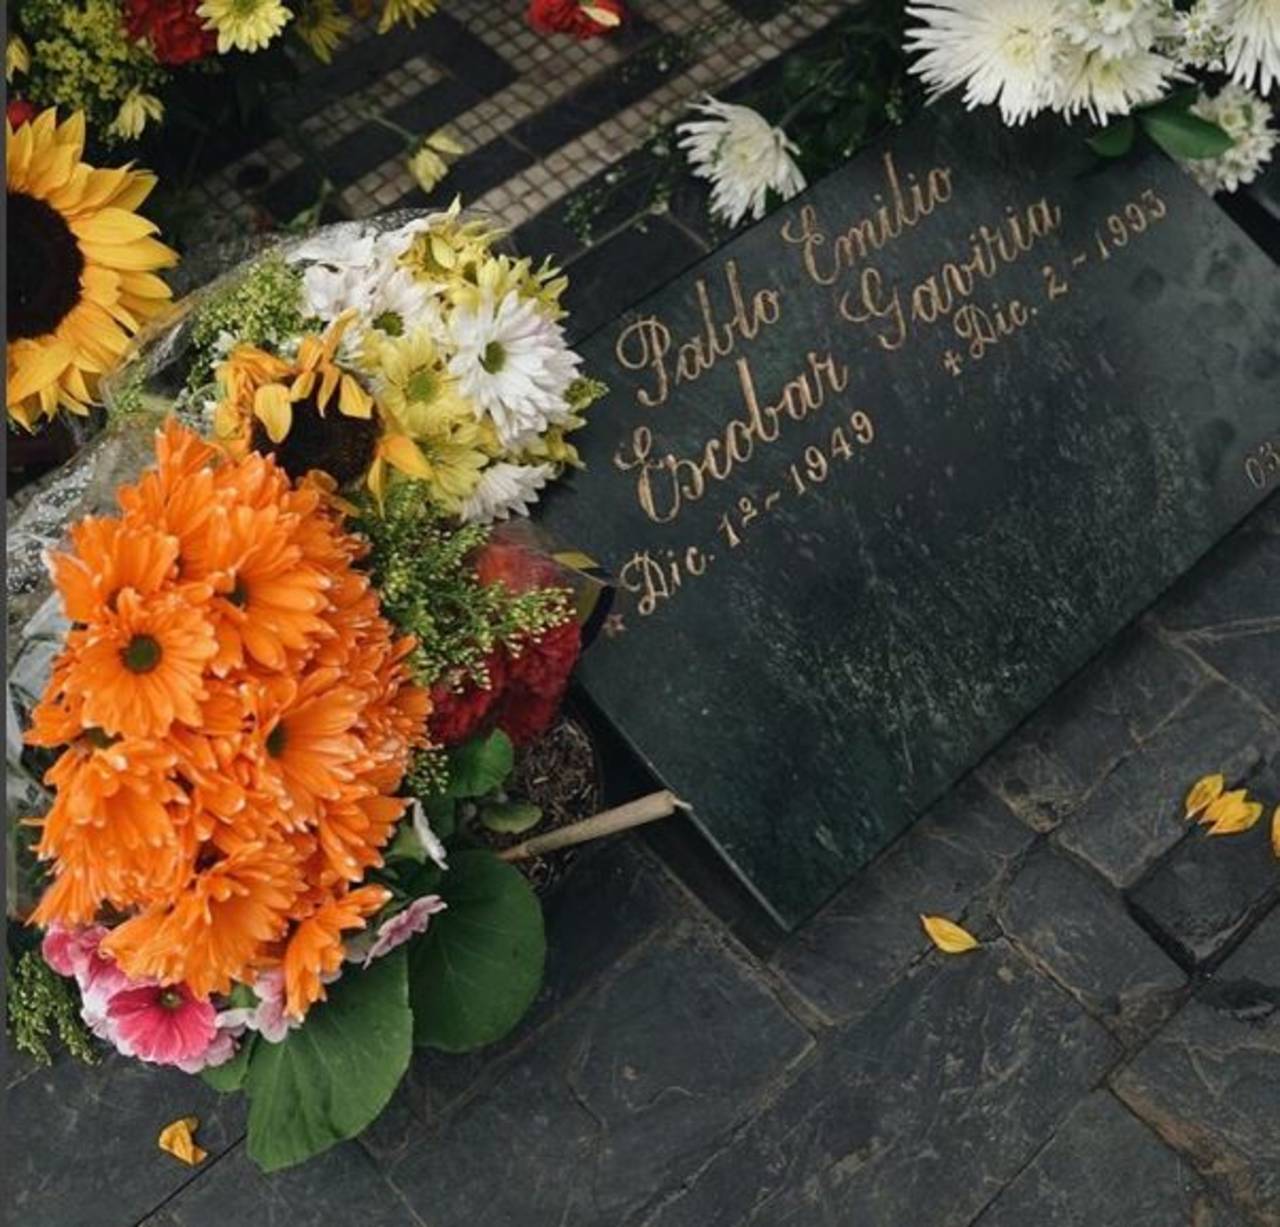 Respeto. El rapero Wiz Khalifa visitó la tumba del narcotraficante Pablo Escobar y fue criticado por el alcalde de Medellín. (INSTAGRAM)